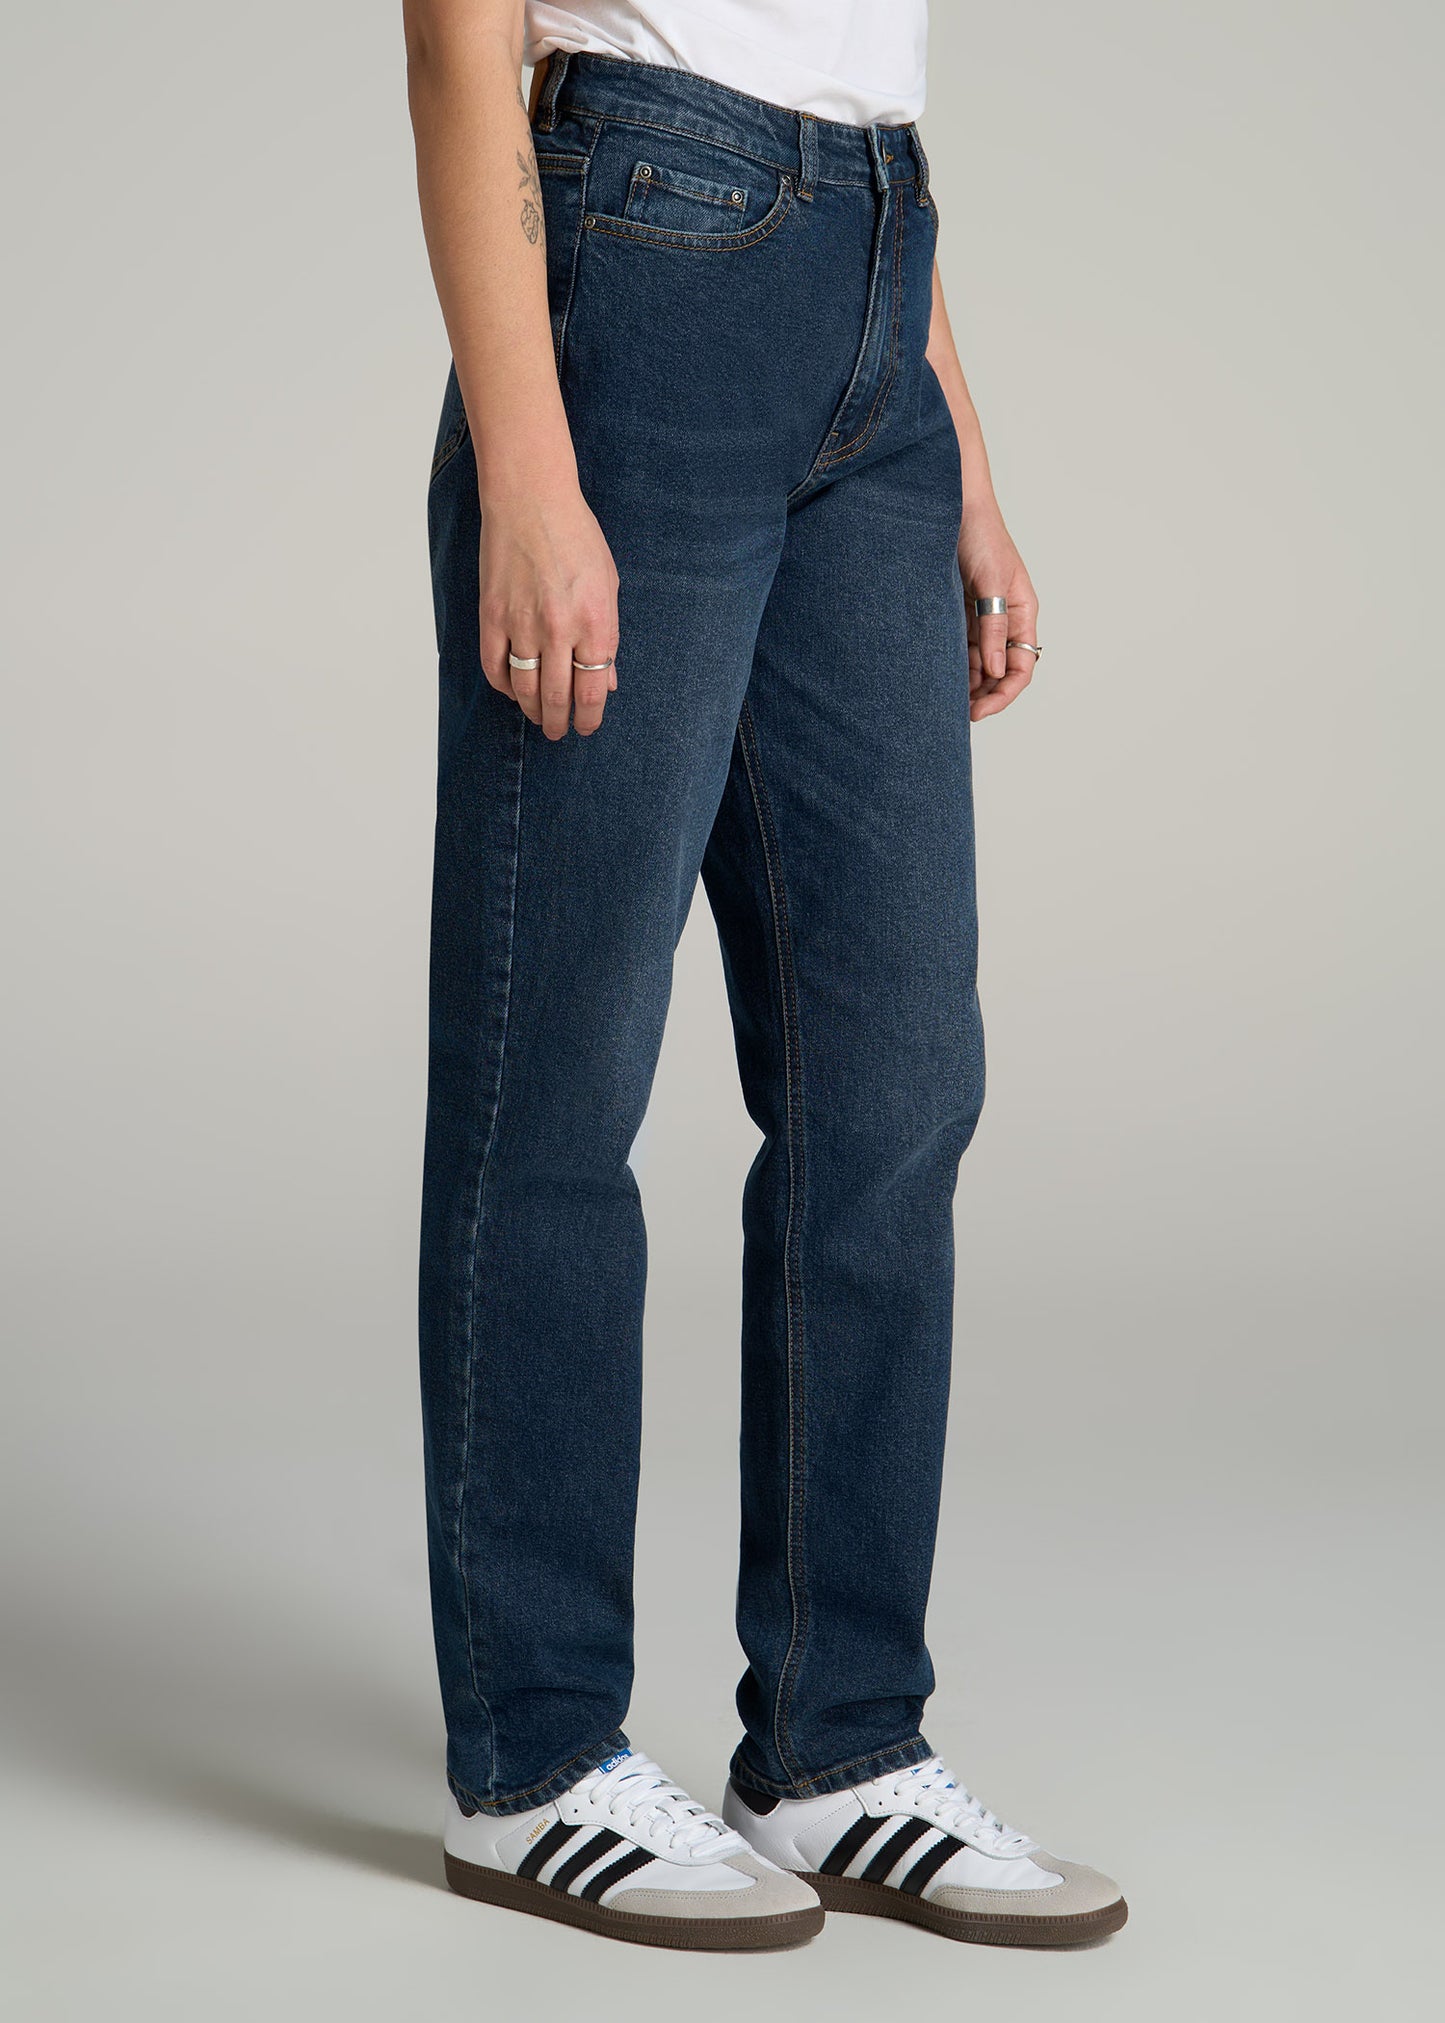 Women's Taper Jeans